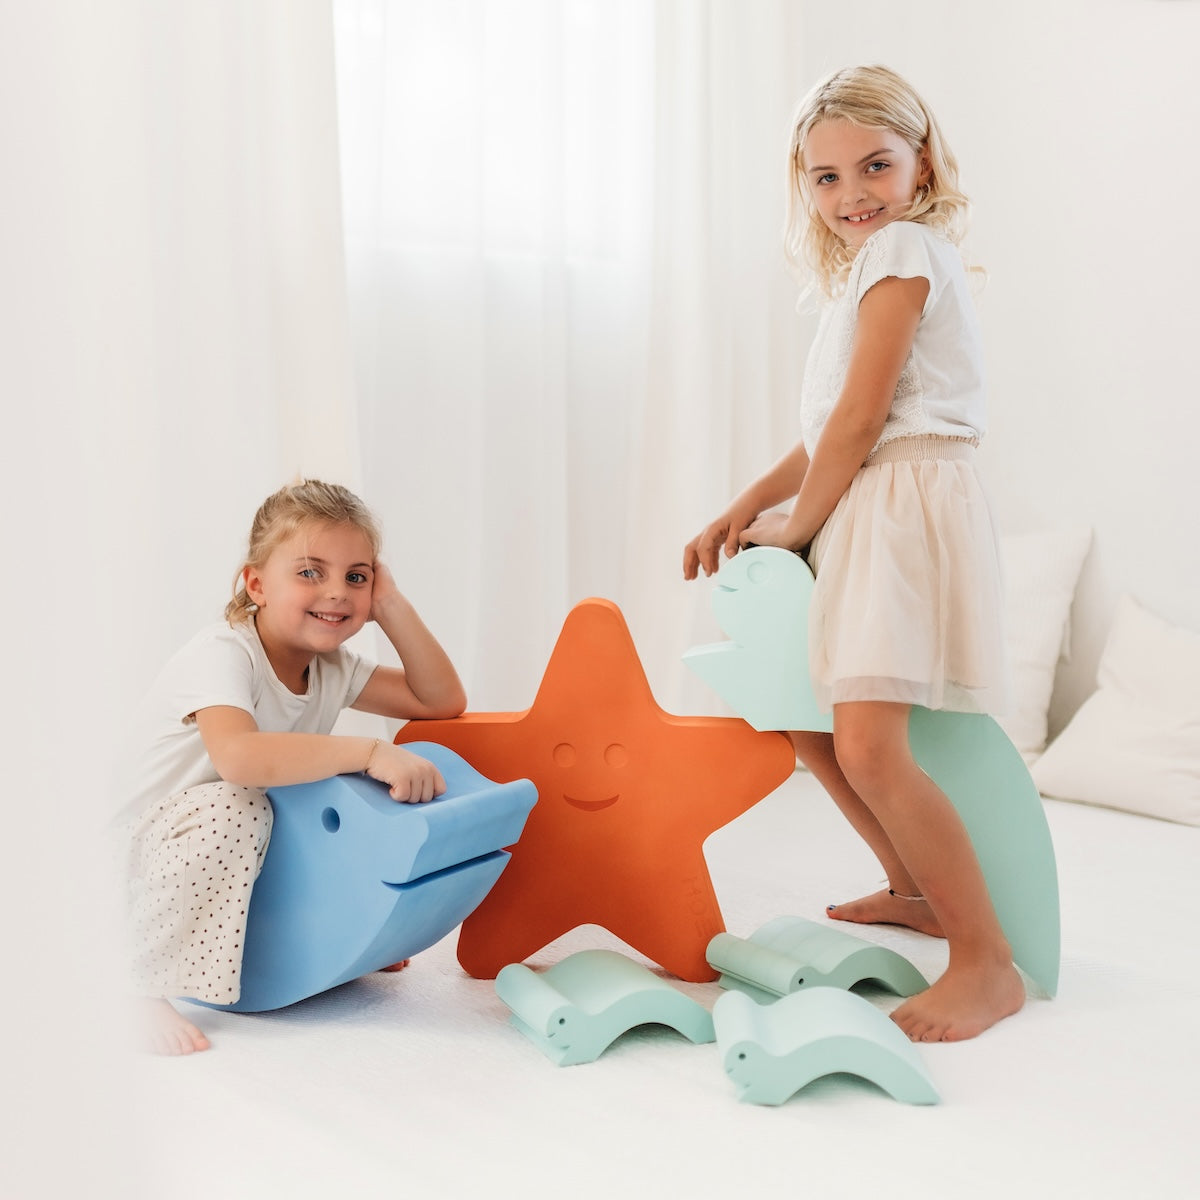 Wil jouw kindje de ster van de zee worden? Dat kan met deze schattige en zeer functionele starfish van Moes Play! Met deze lieve zeester leert je kindje in een mum van tijd balanceren, stuiteren, draaien en surfen. Zijn ze klaar voor dit avontuur? VanZus